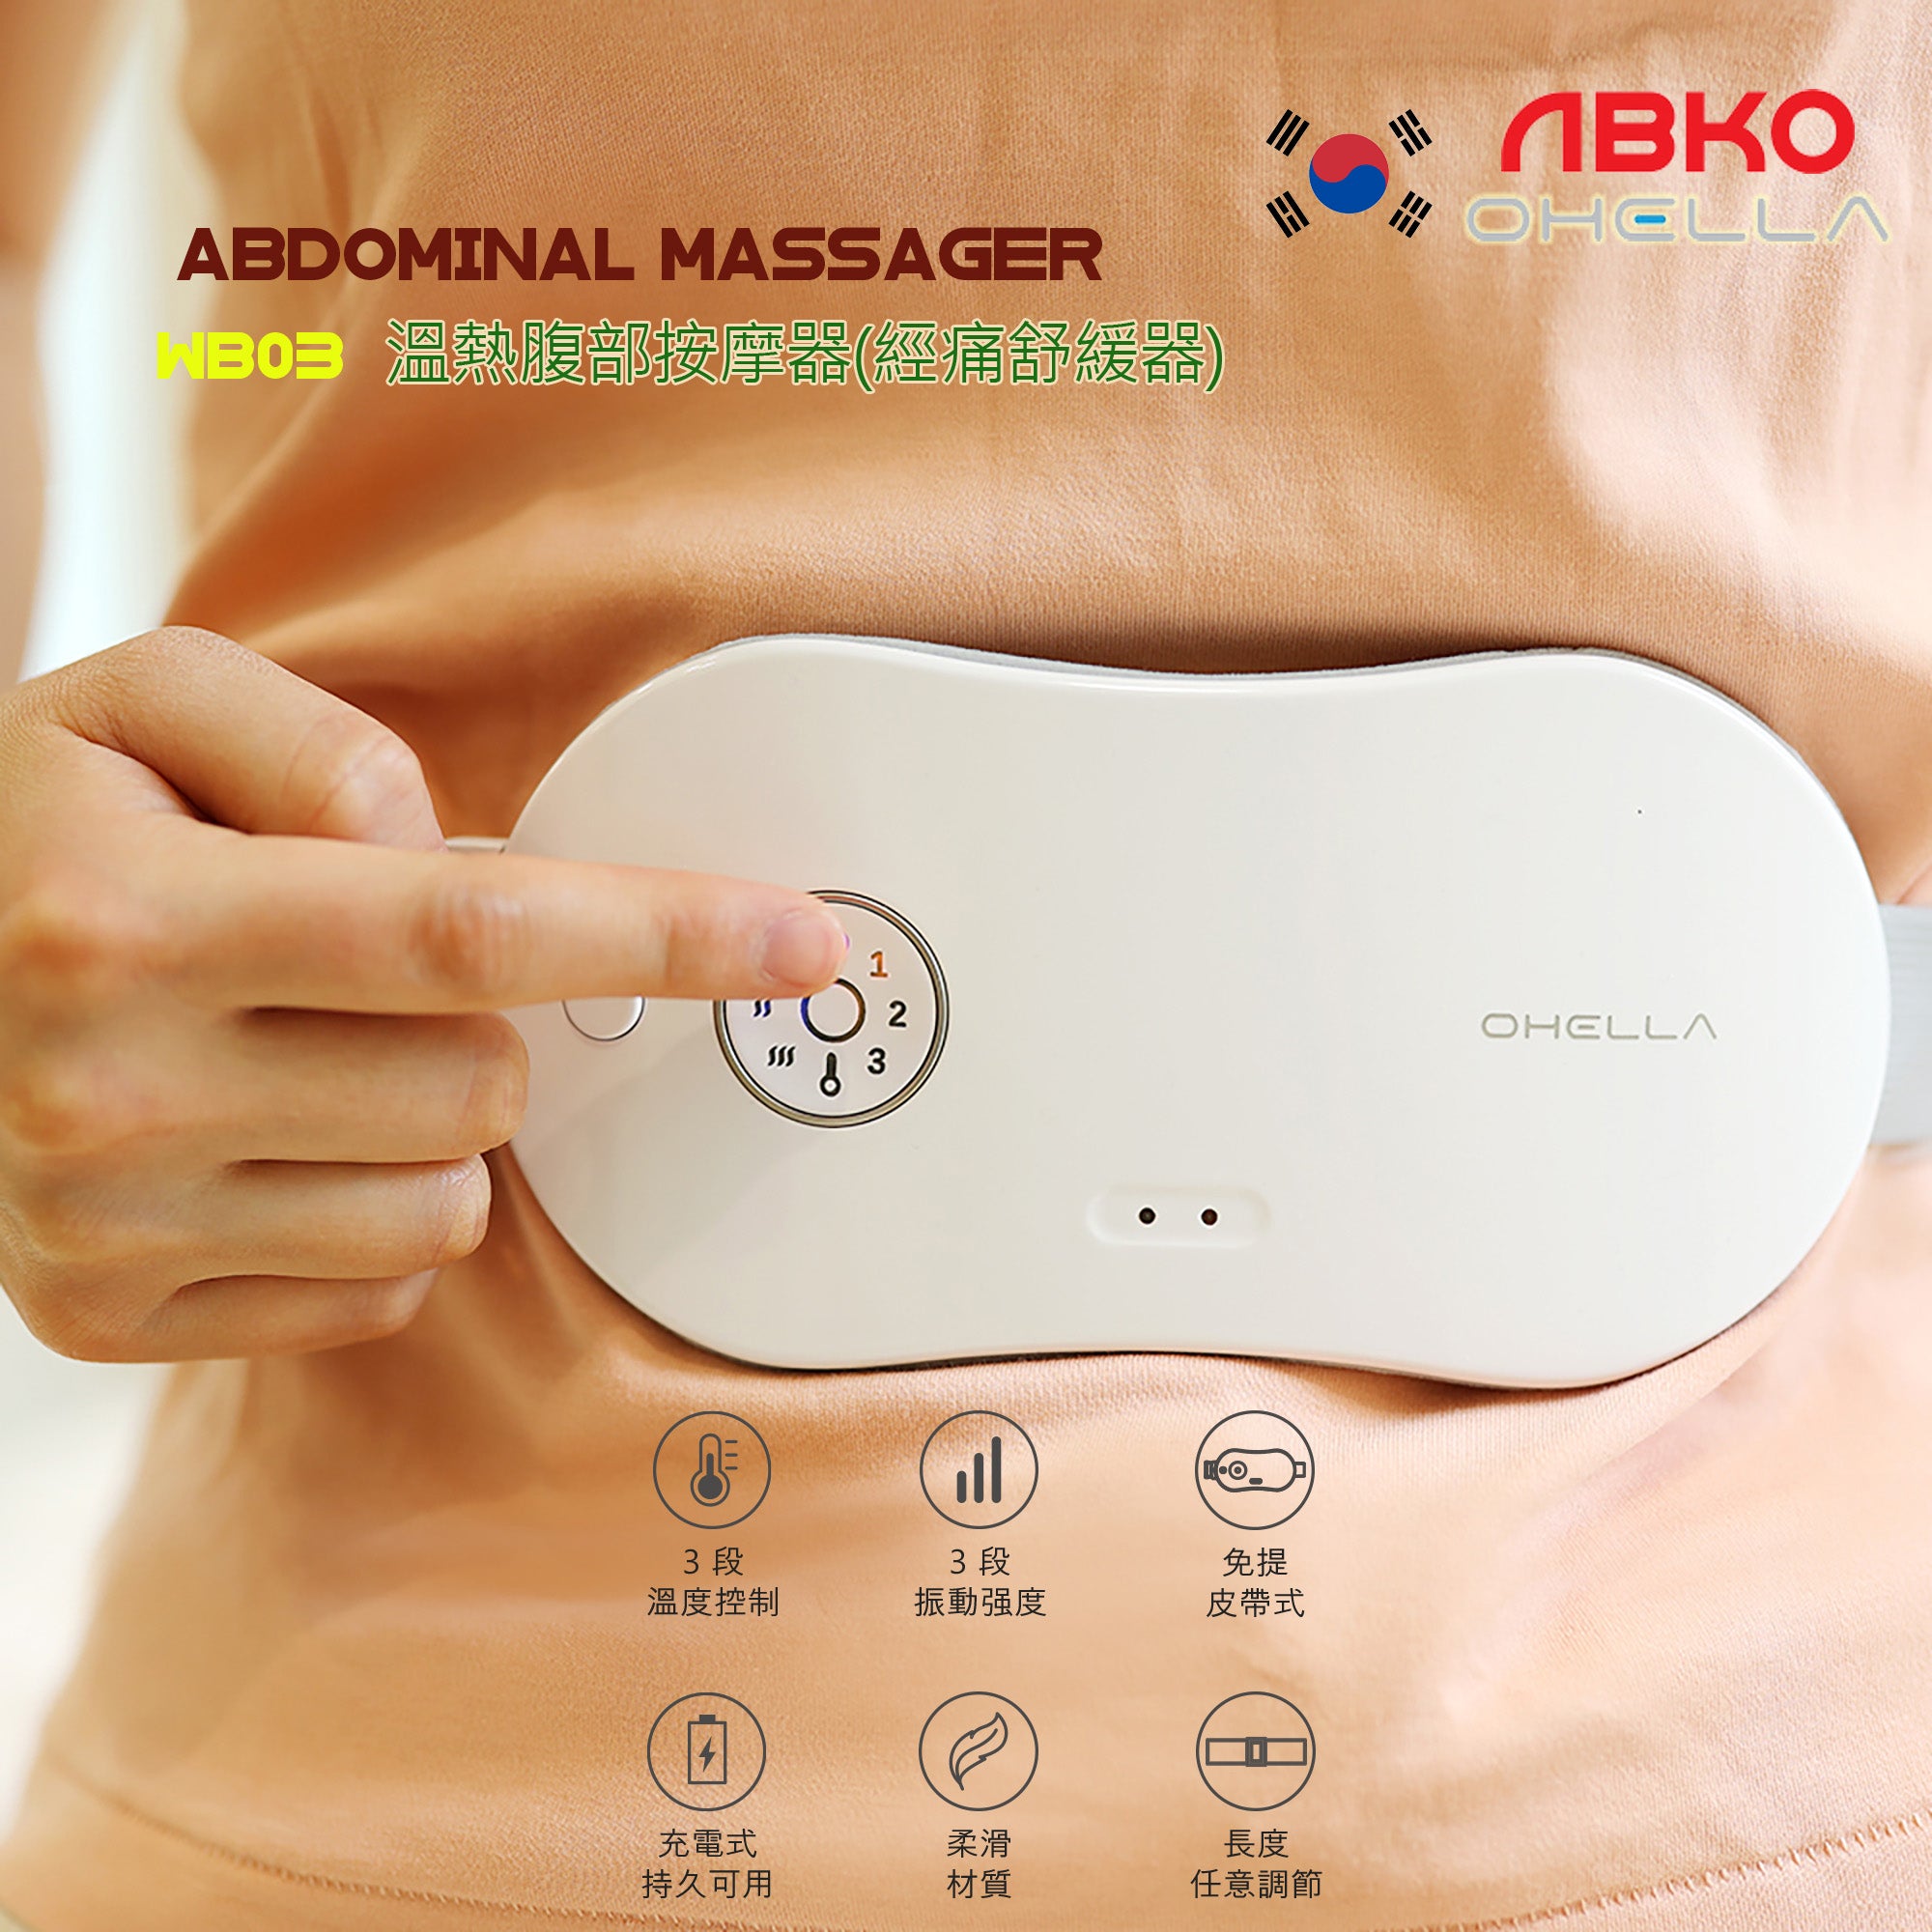 韓國 ABKO OHELLA WB03 溫熱腹部按摩器/經痛舒緩器/暖宮腰帶 Abdominal Massager 震動按摩器